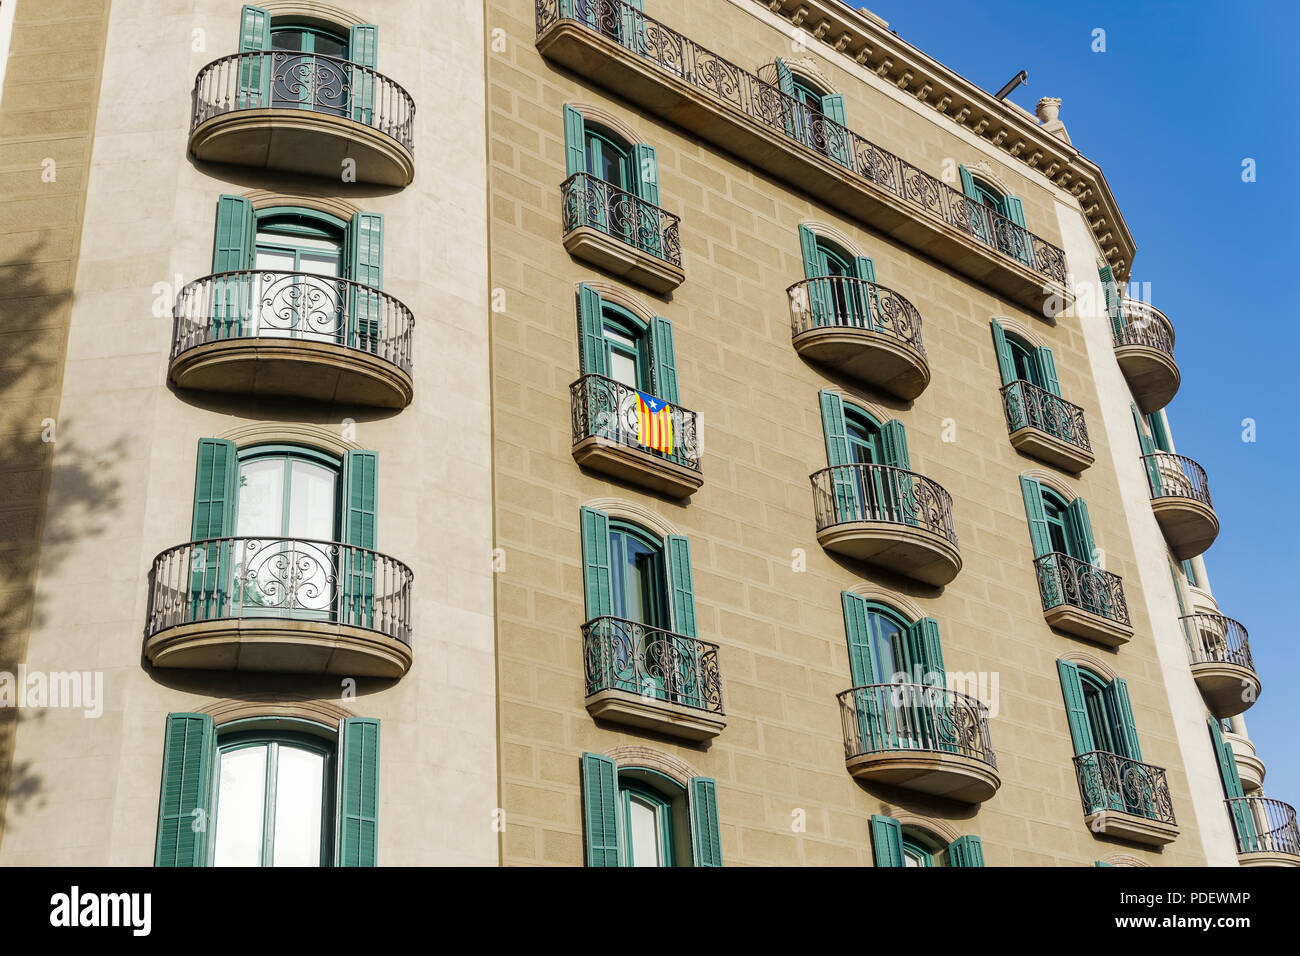 Barcelone, Espagne drapeau catalan sur un balcon du bâtiment. Le drapeau étoilé La Senyera Estelada étendus dehors une maison dans les rues de la capitale catalane. Banque D'Images